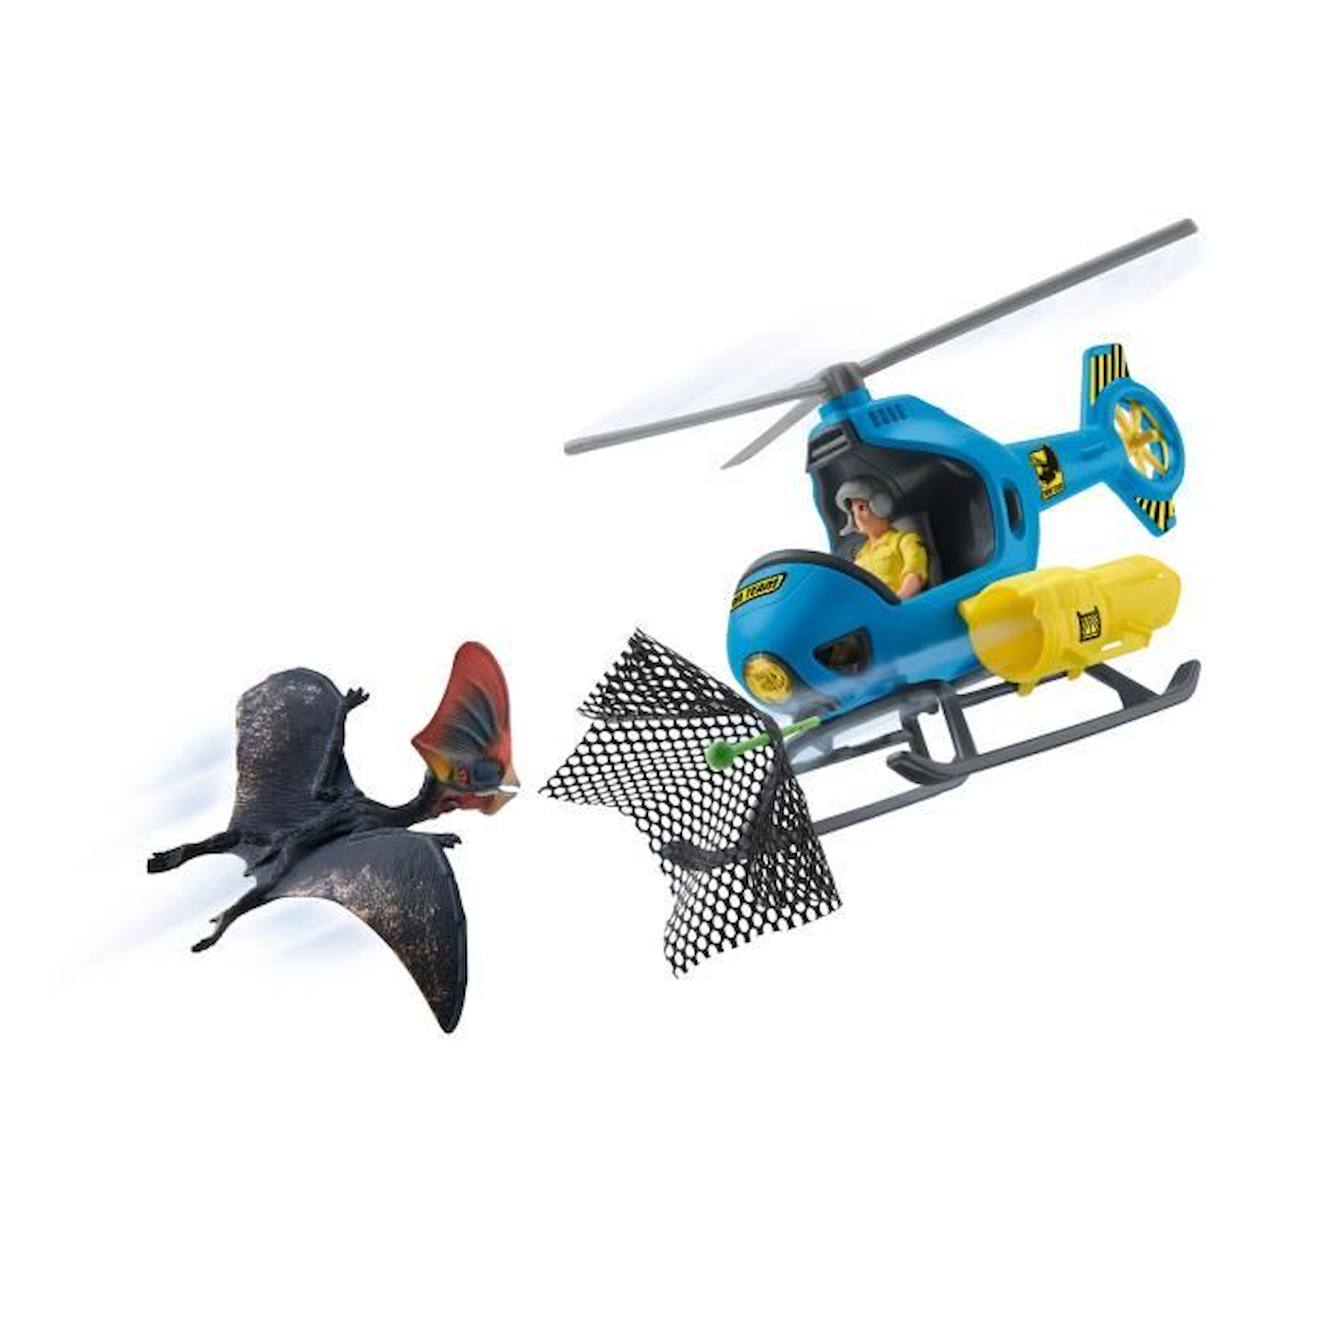 Attaque Aérienne, Coffret Schleich Avec 1 Hélicoptère, 1 Figurine Humaine Et 1 Dinosaure Tapejara, E